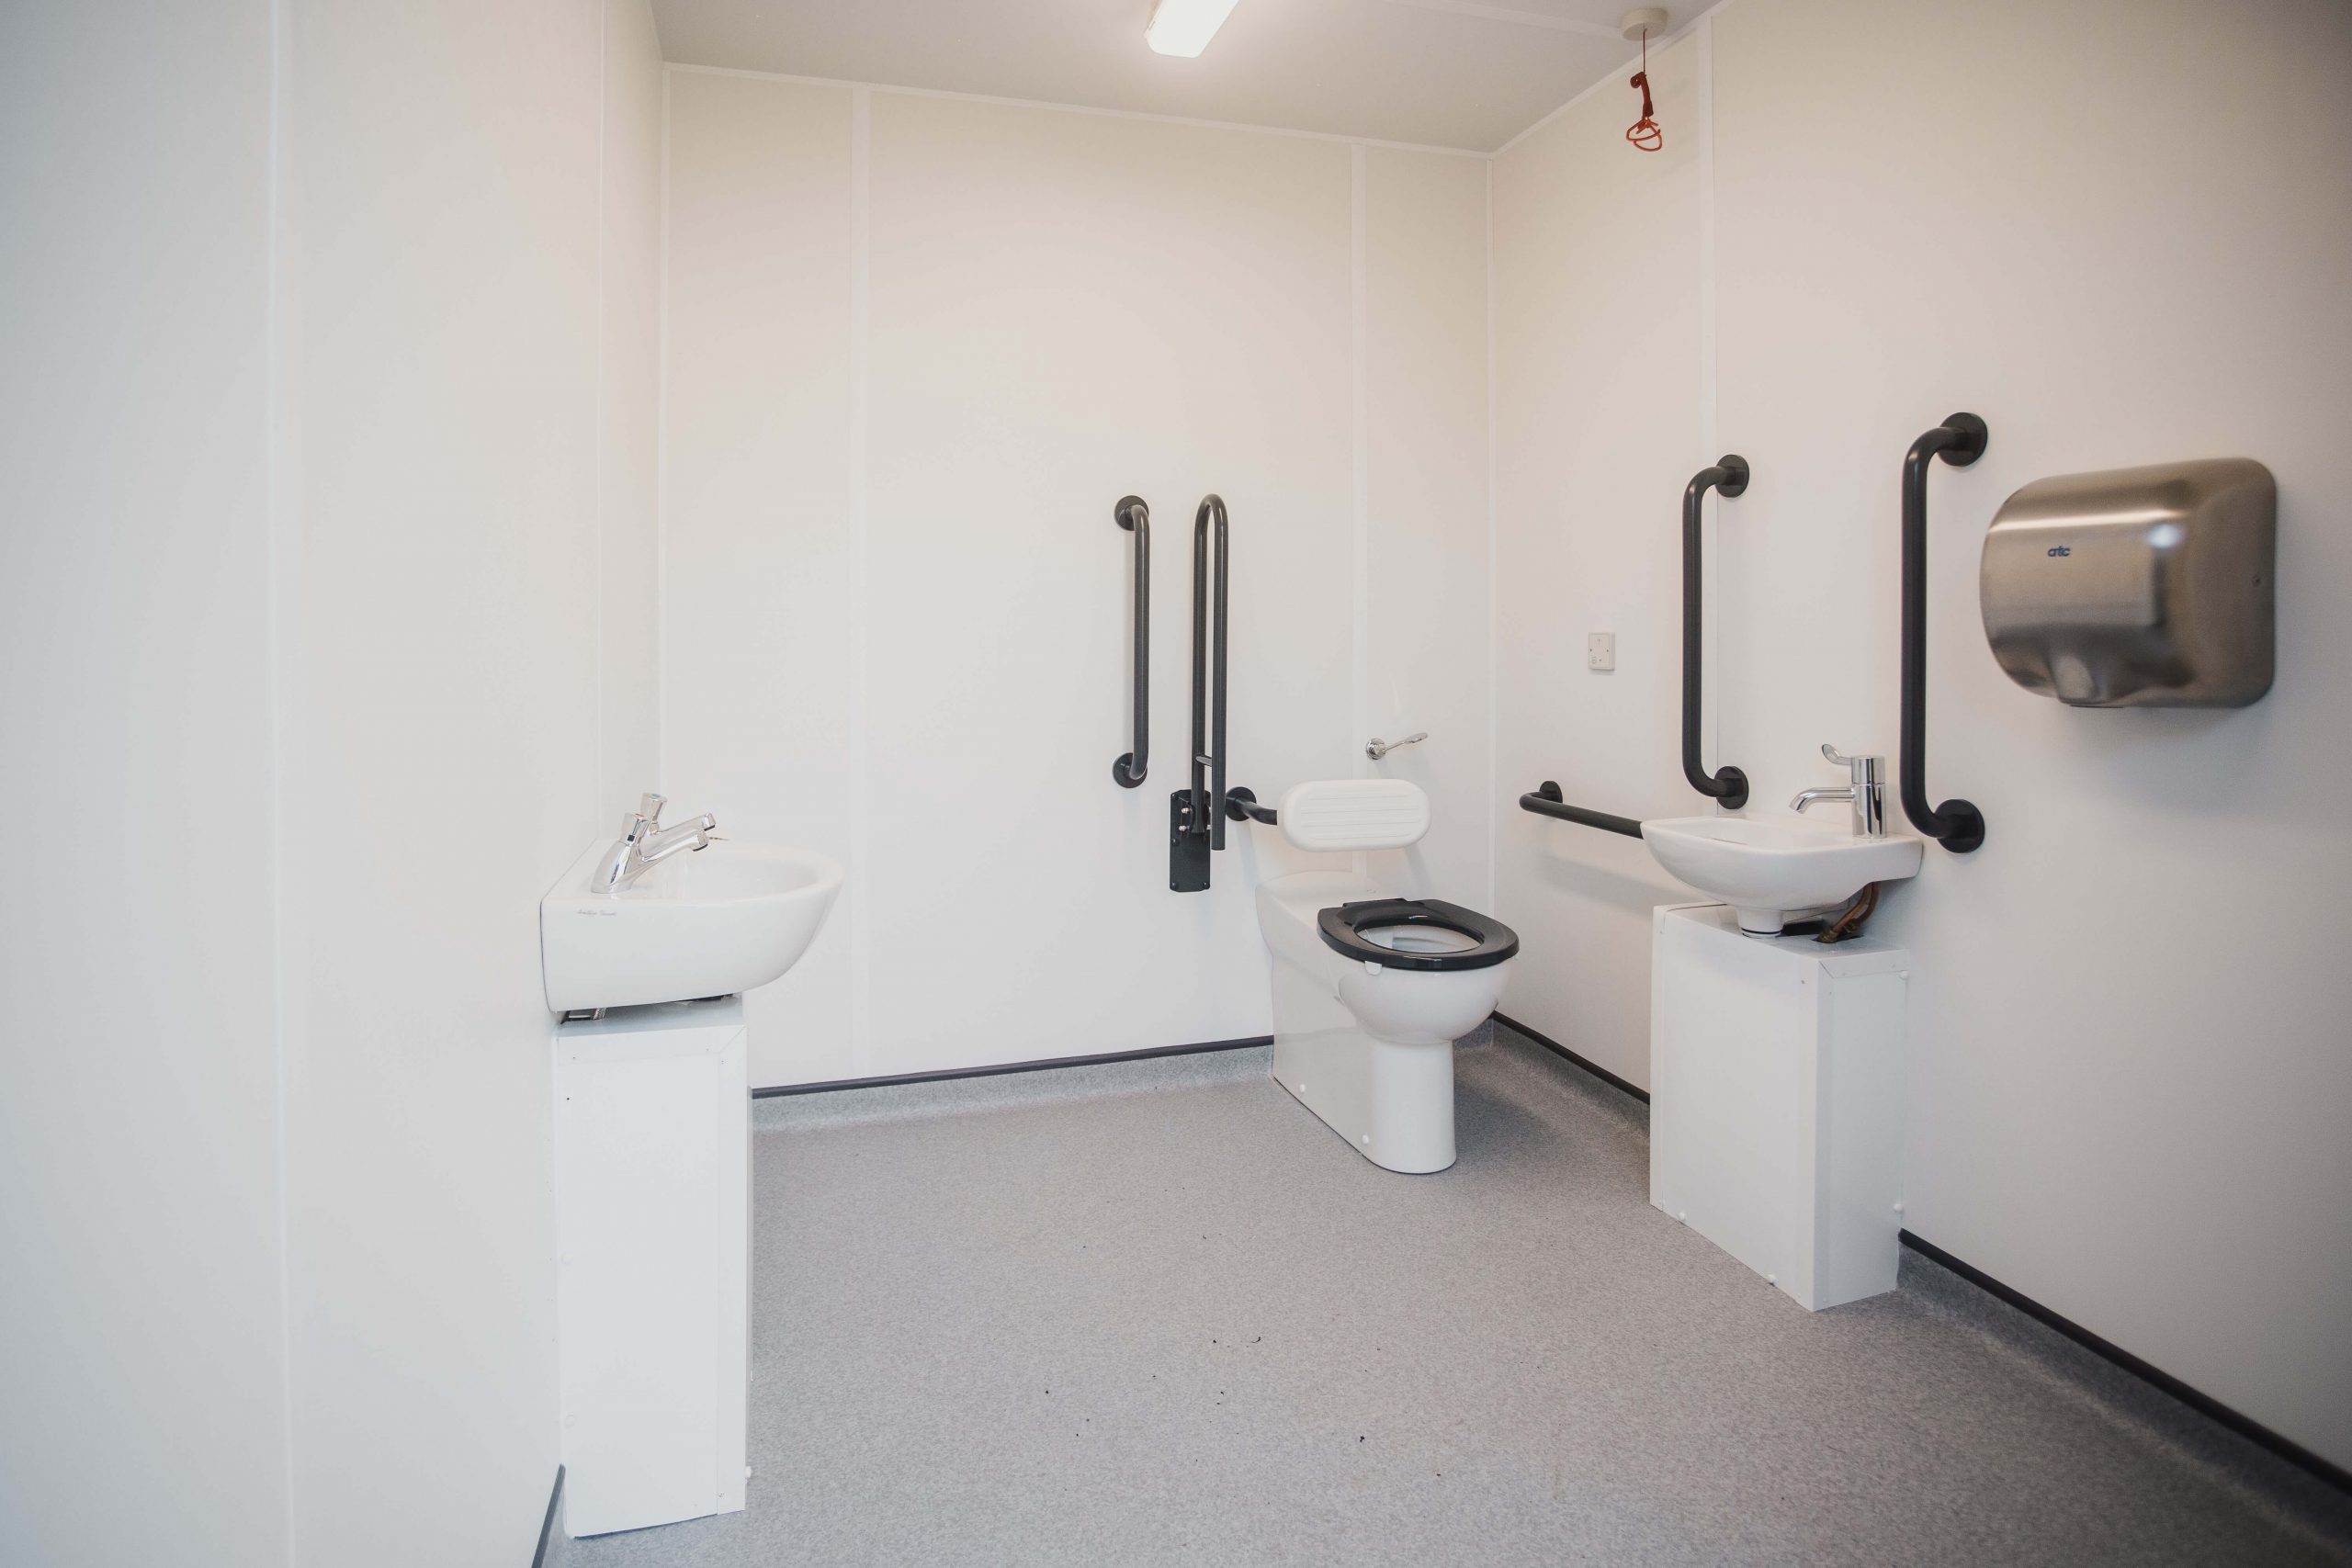 Modular building disabled toilet facilities